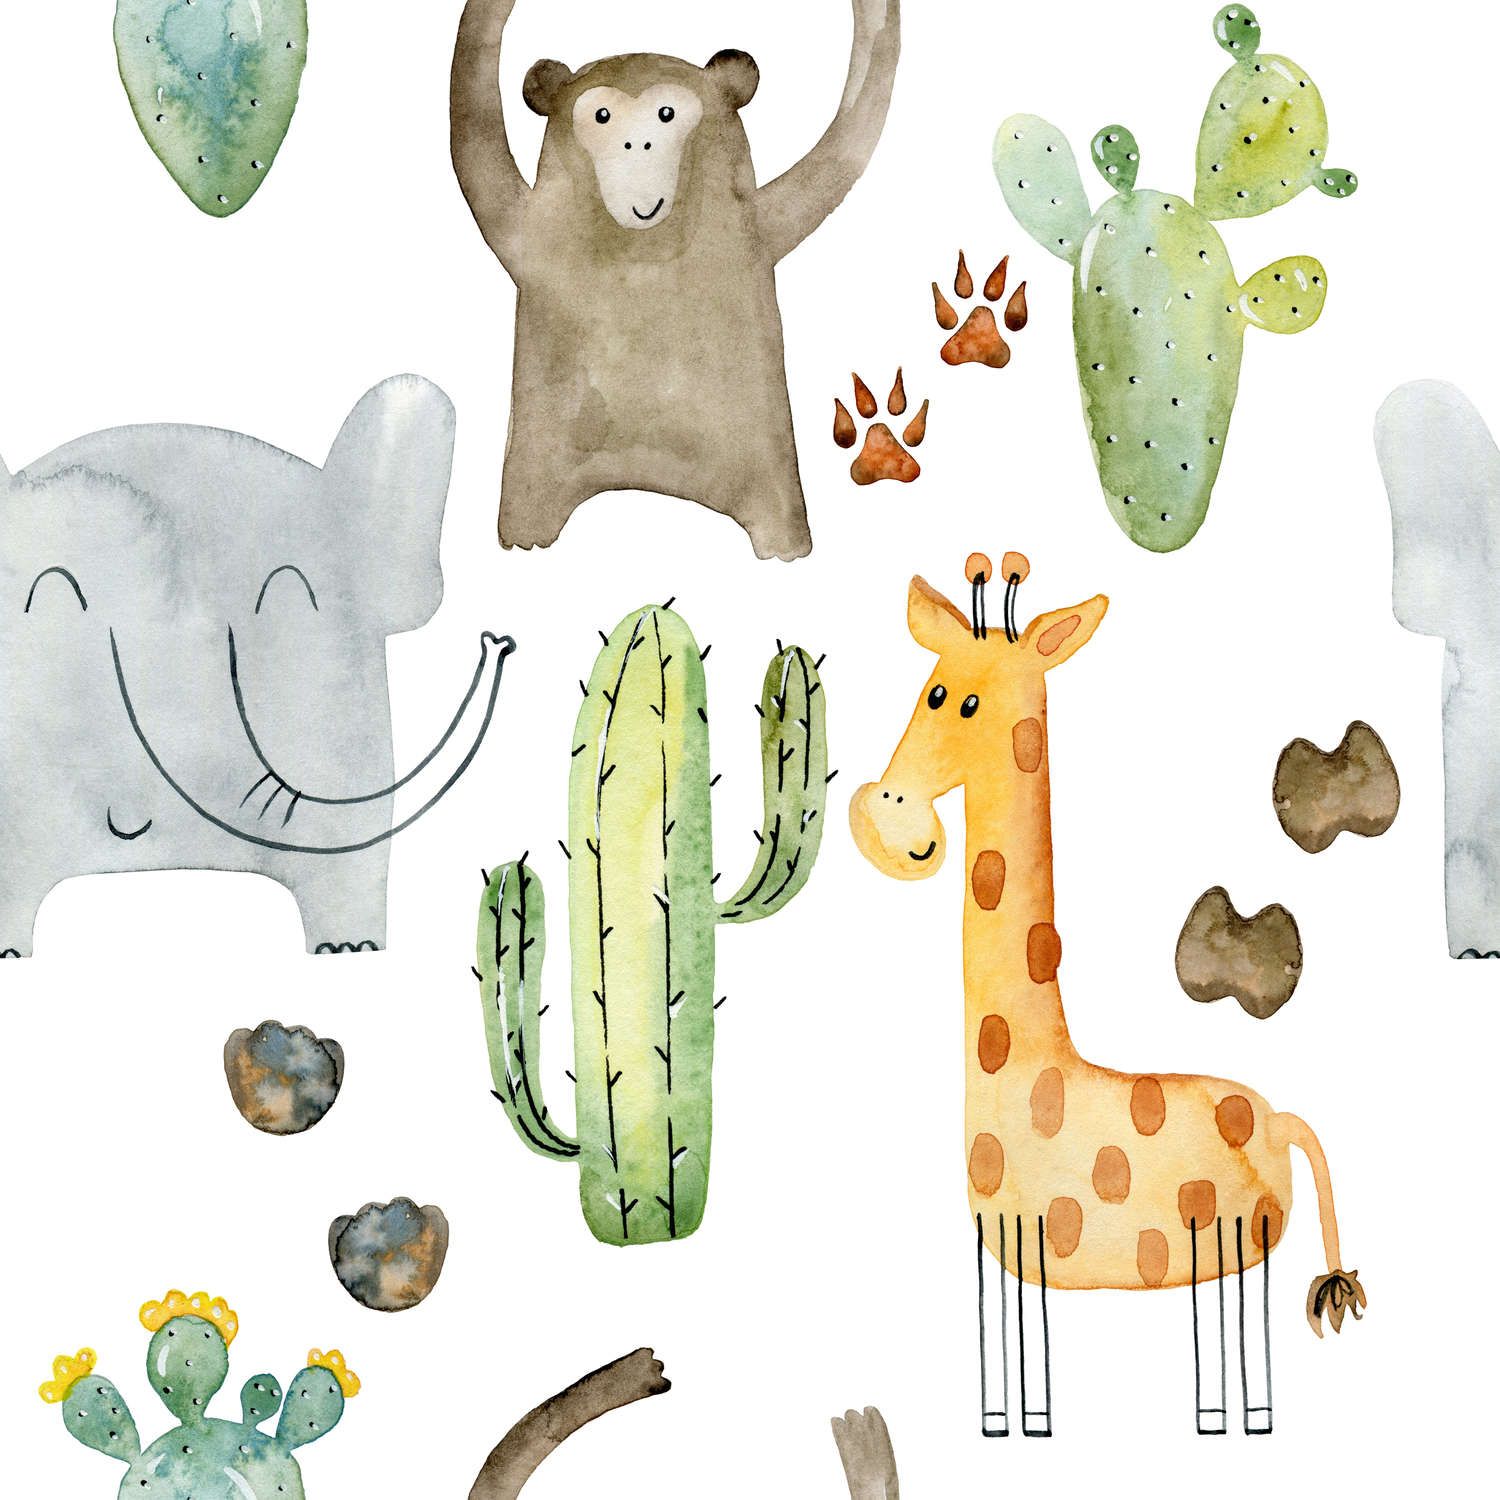             papiers peints à impression numérique avec animaux et cactus - intissé lisse & nacré
        